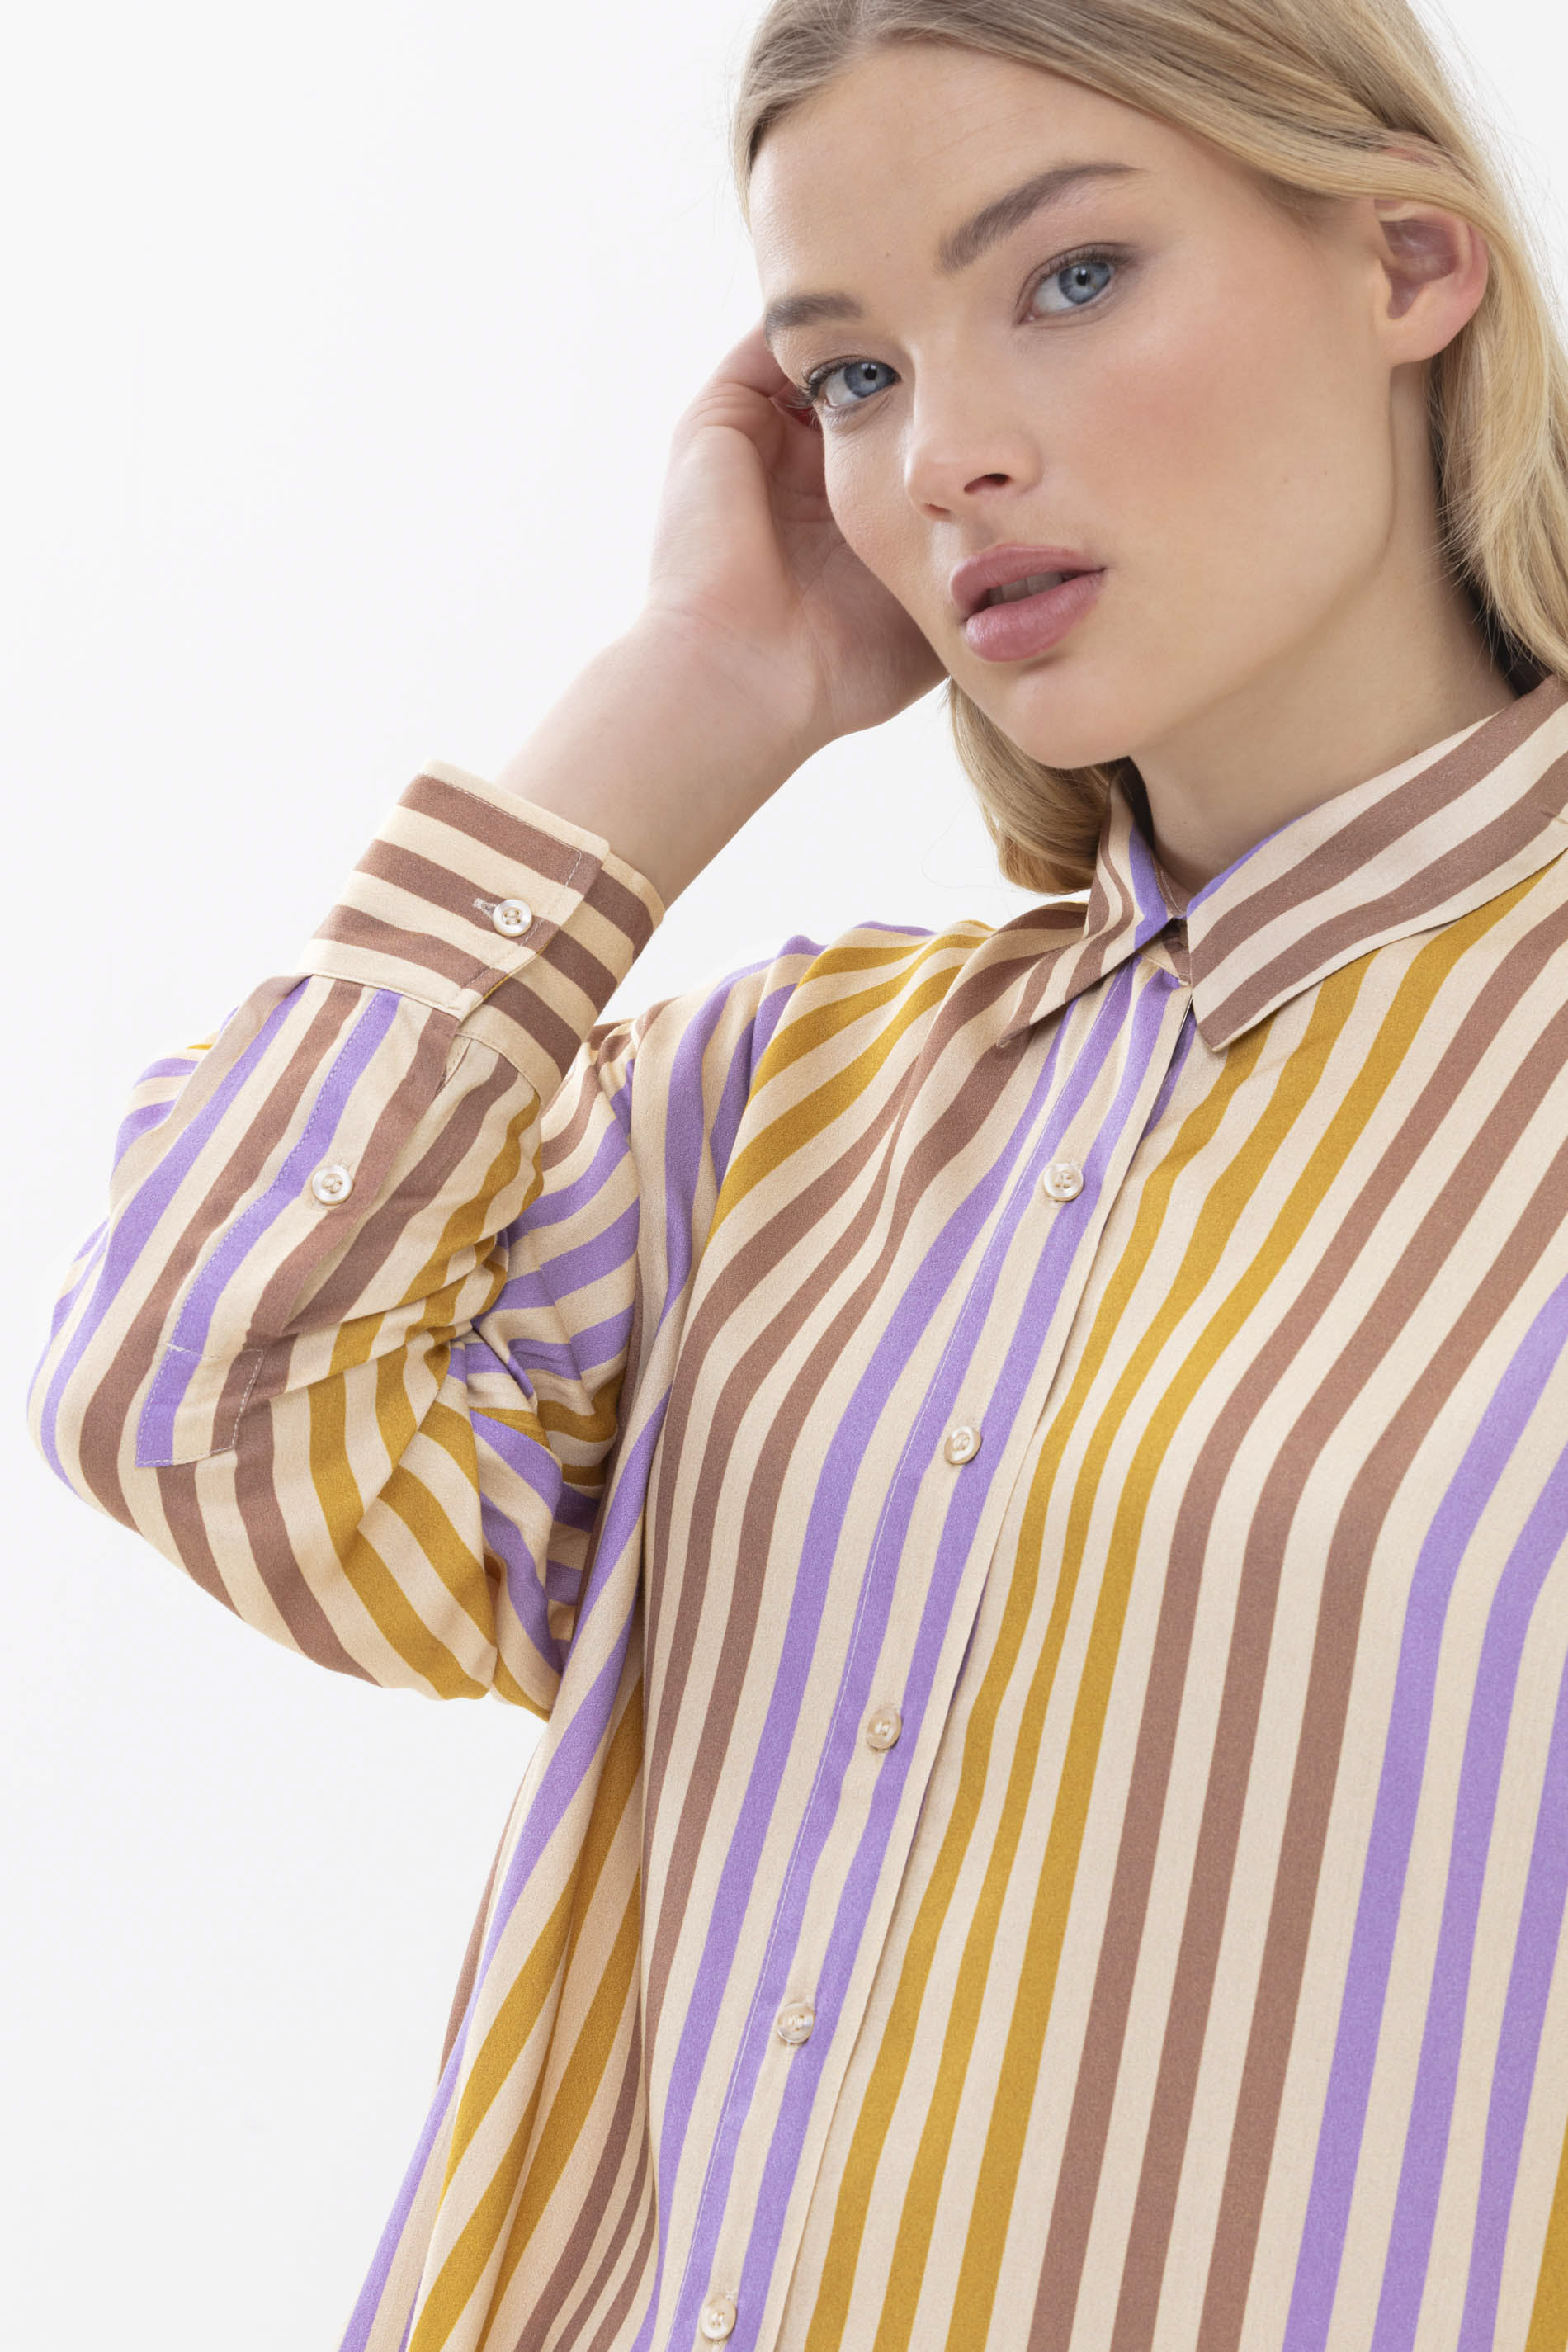 Long-sleeved shirt Wintergold Serie Alana Detail View 01 | mey®